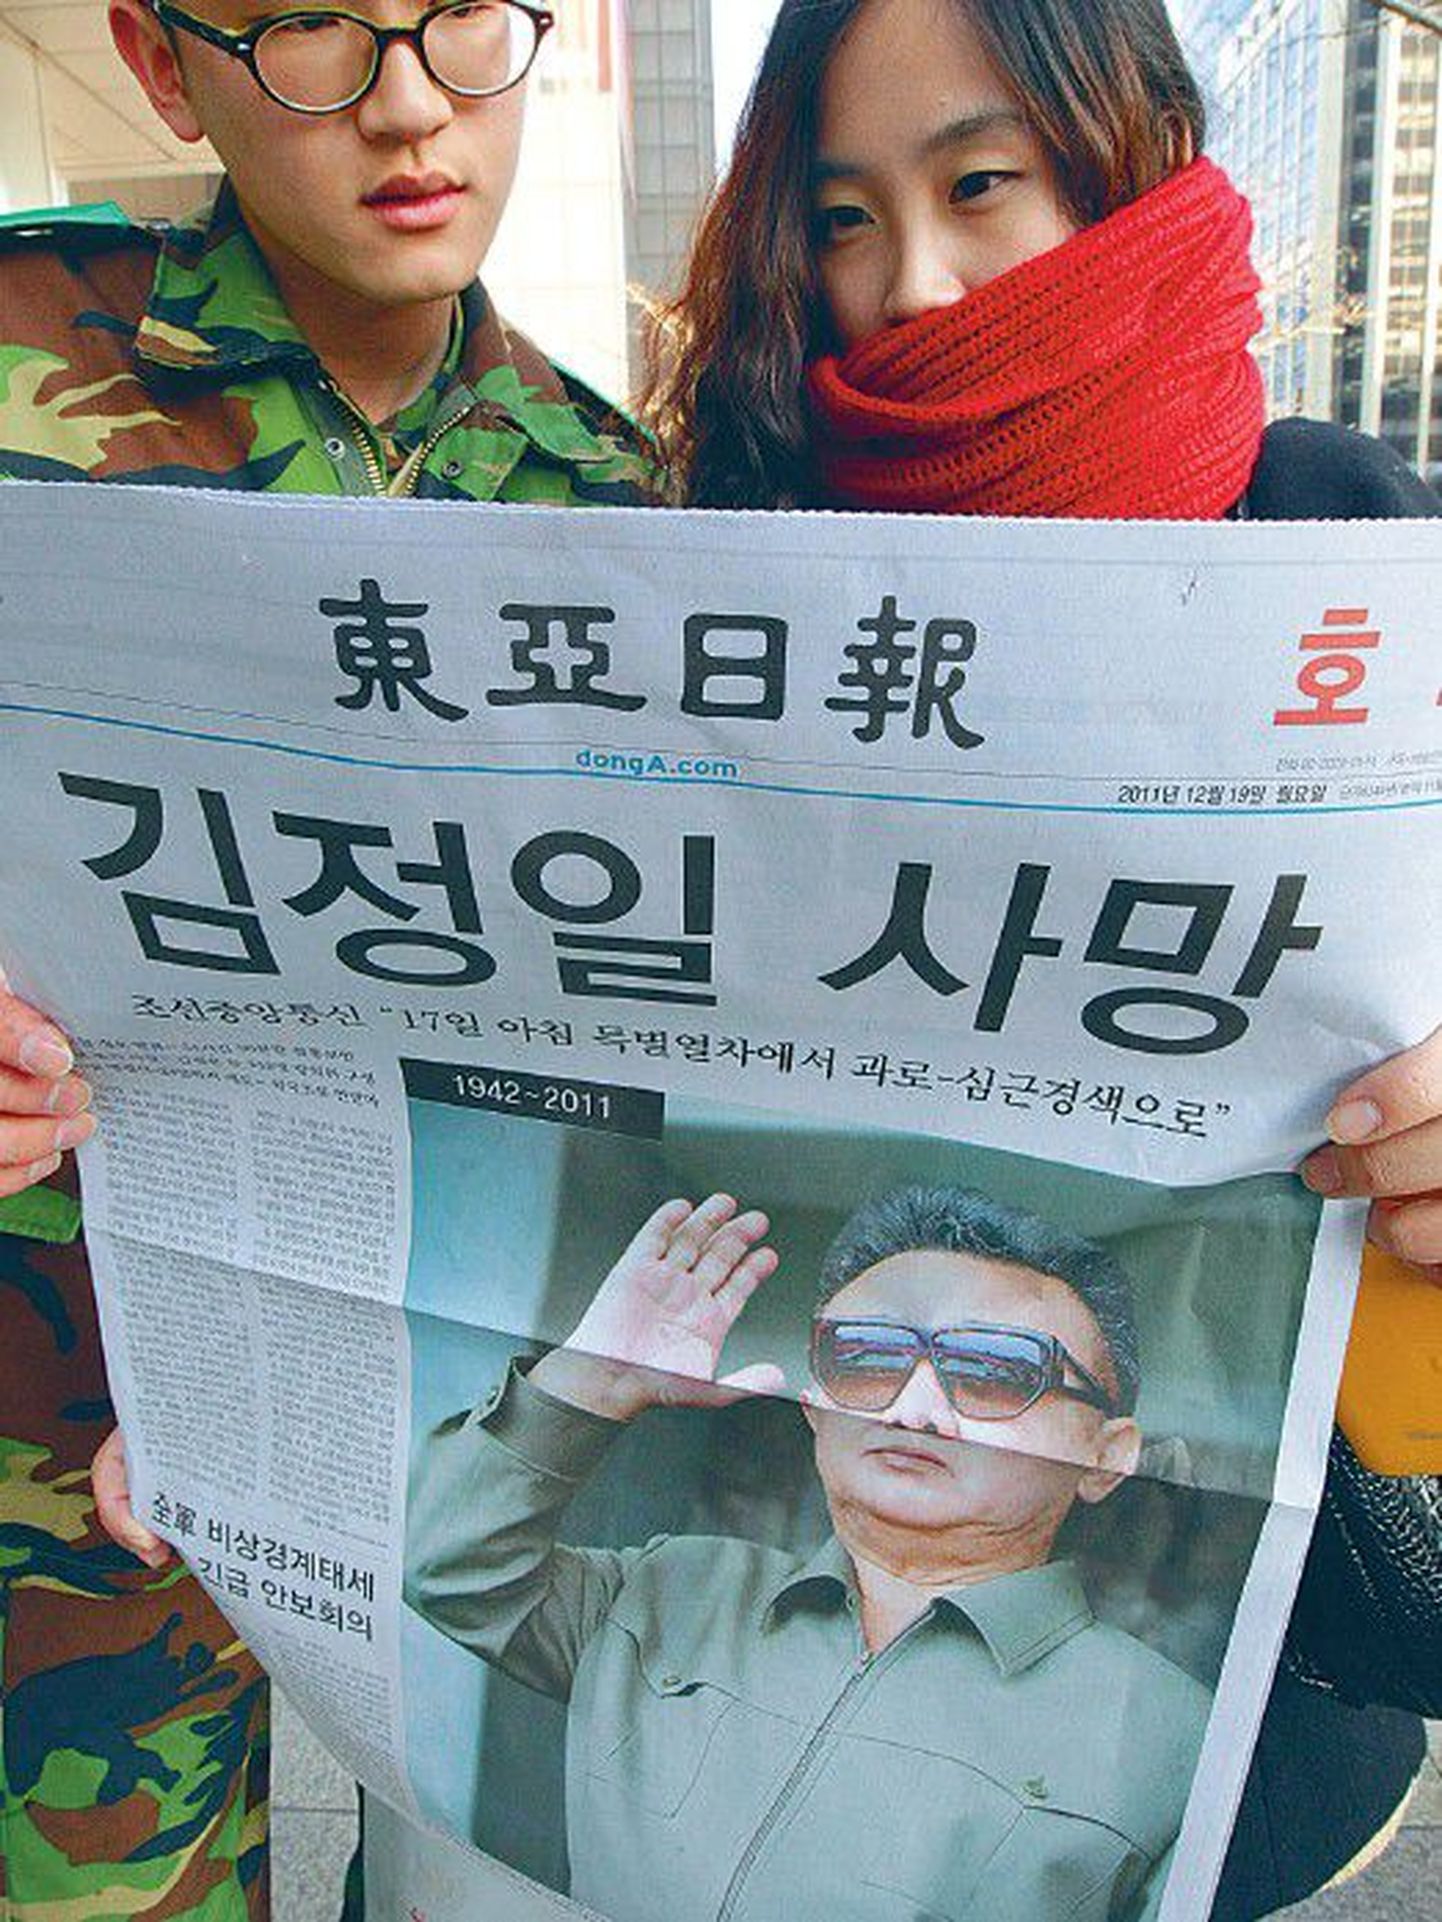 Молодые южнокорейцы читают вчерашний спецвыпуск местной сеульской газеты, в которой было опубликовано сообщение о смерти лидера соседней страны Ким Чен Ира.